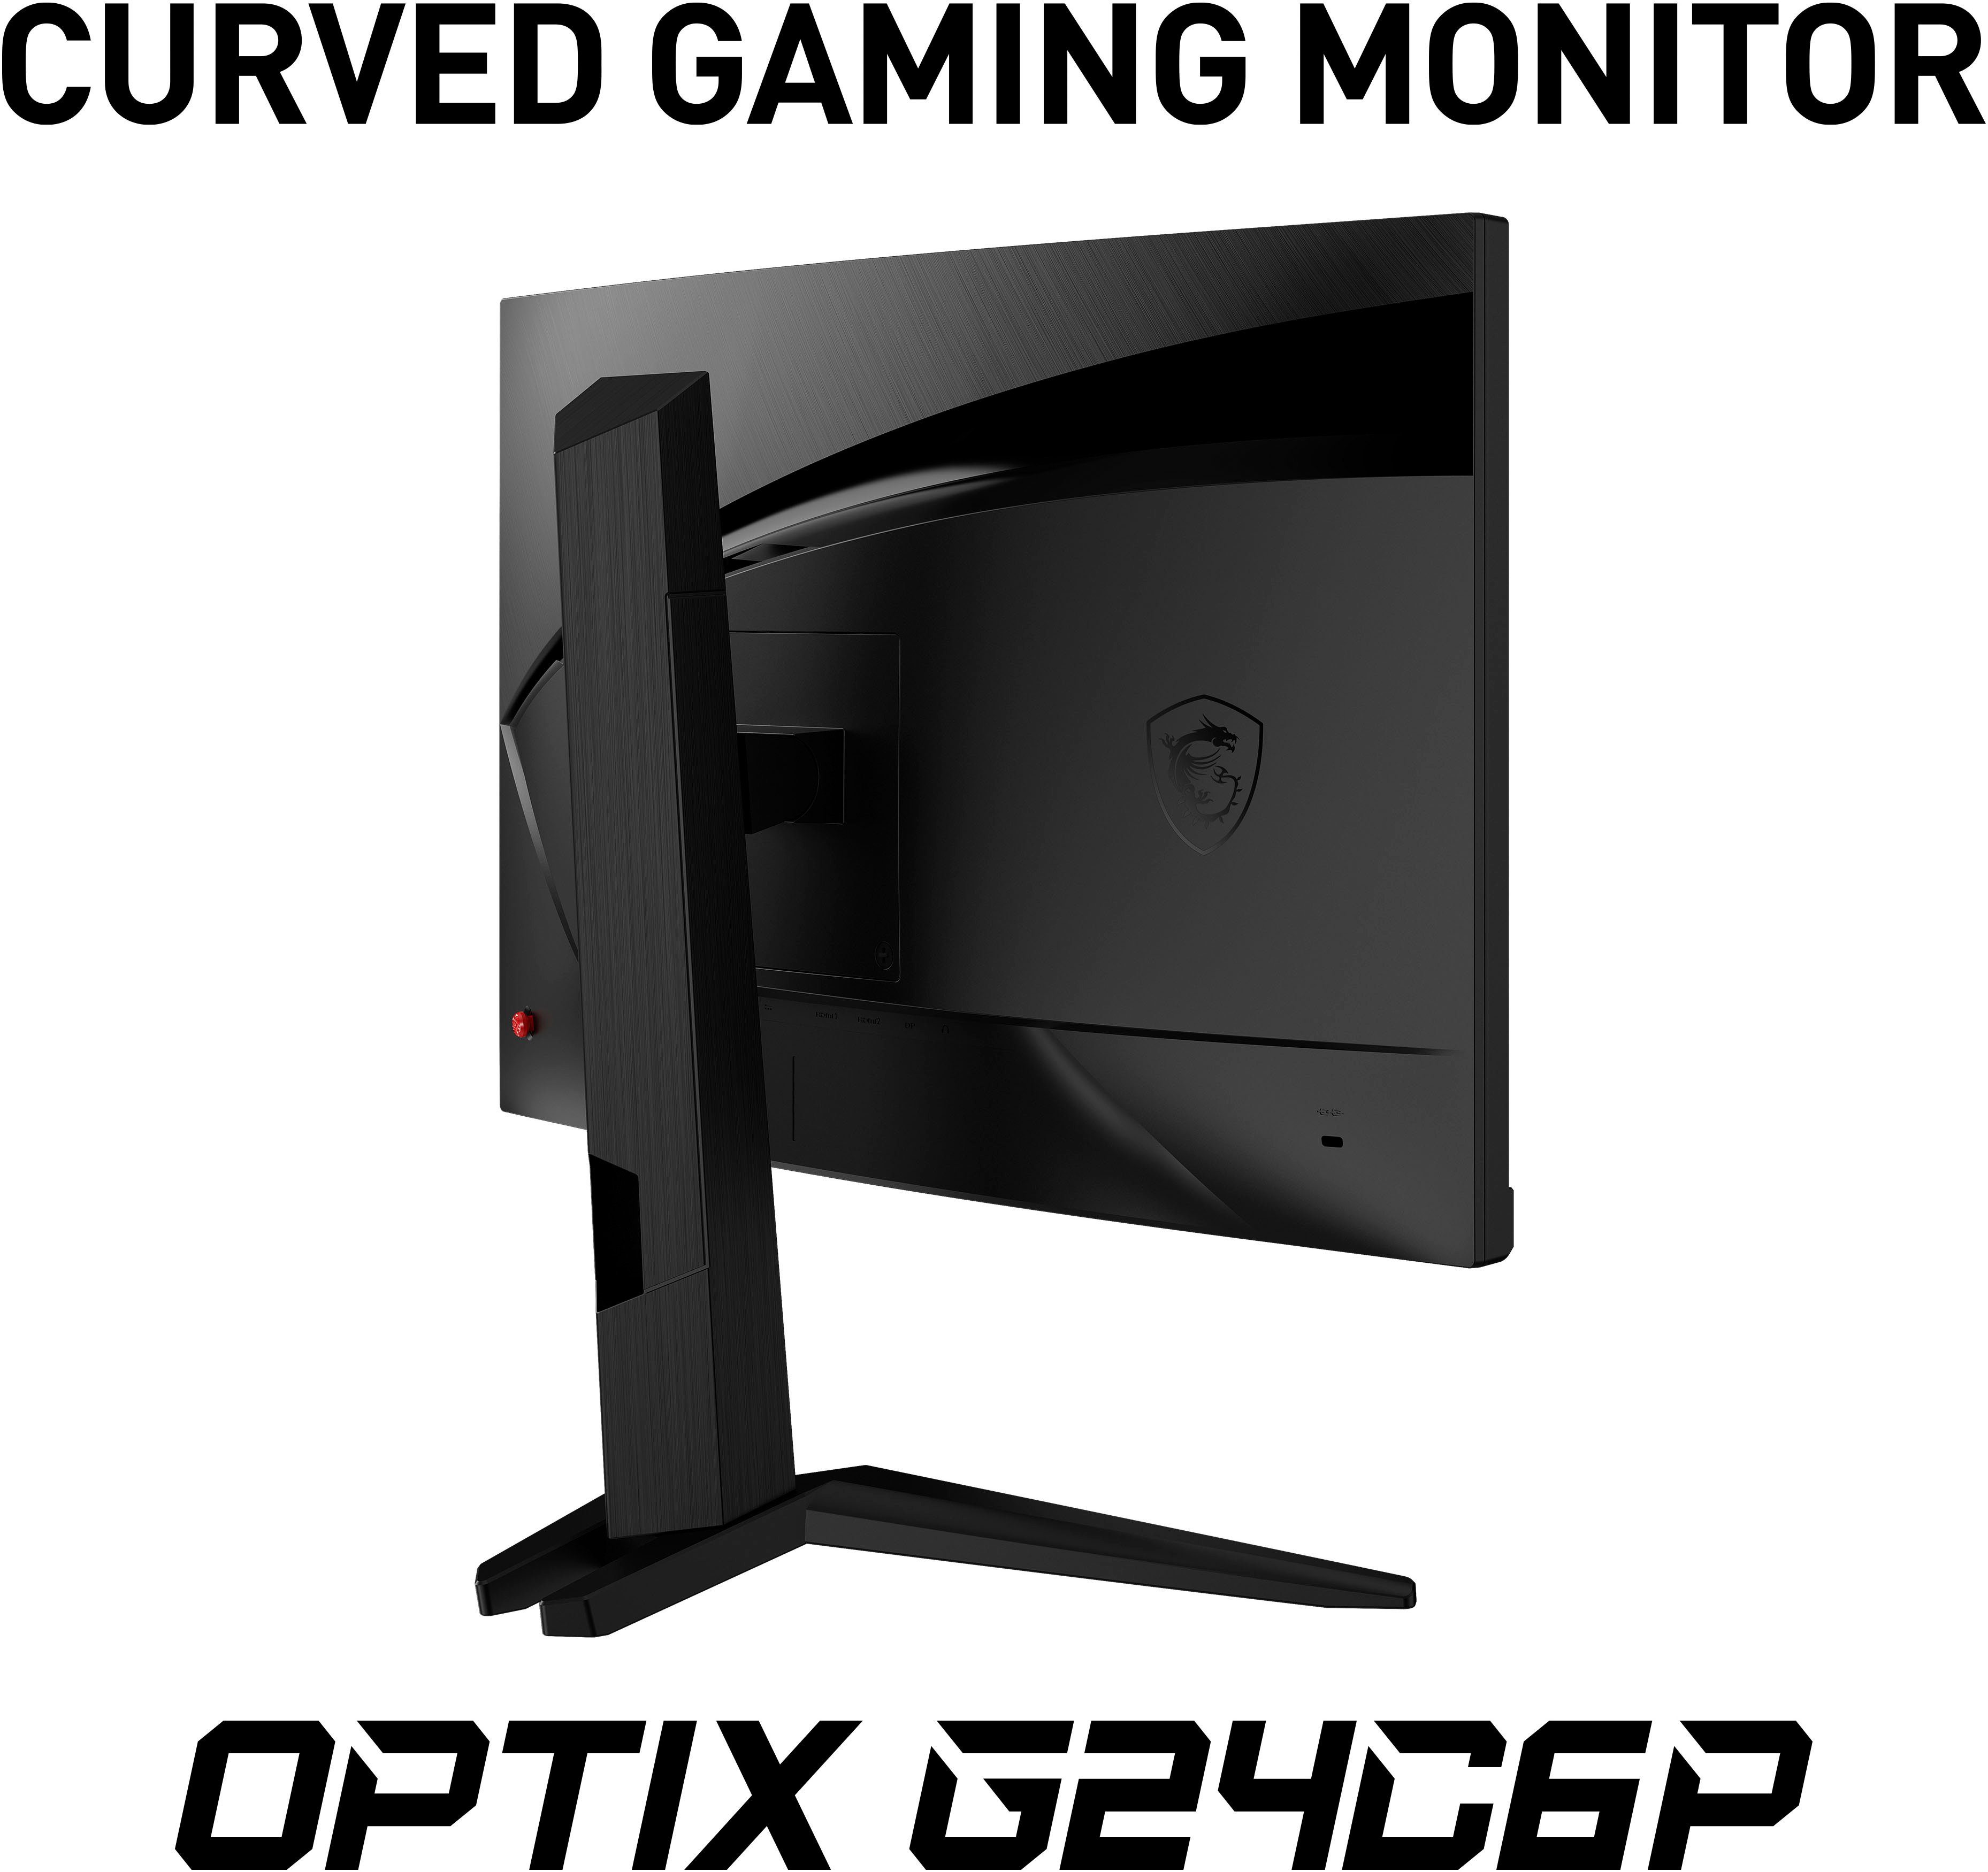 MSI Optix Curved-Gaming-LED-Monitor 1 px, 1080 x Reaktionszeit, Herstellergarantie) Full 1920 (60 höhenverstellbar, LCD, 3 144 HD, G24C6P cm/24 Hz, ms ", Jahre VA